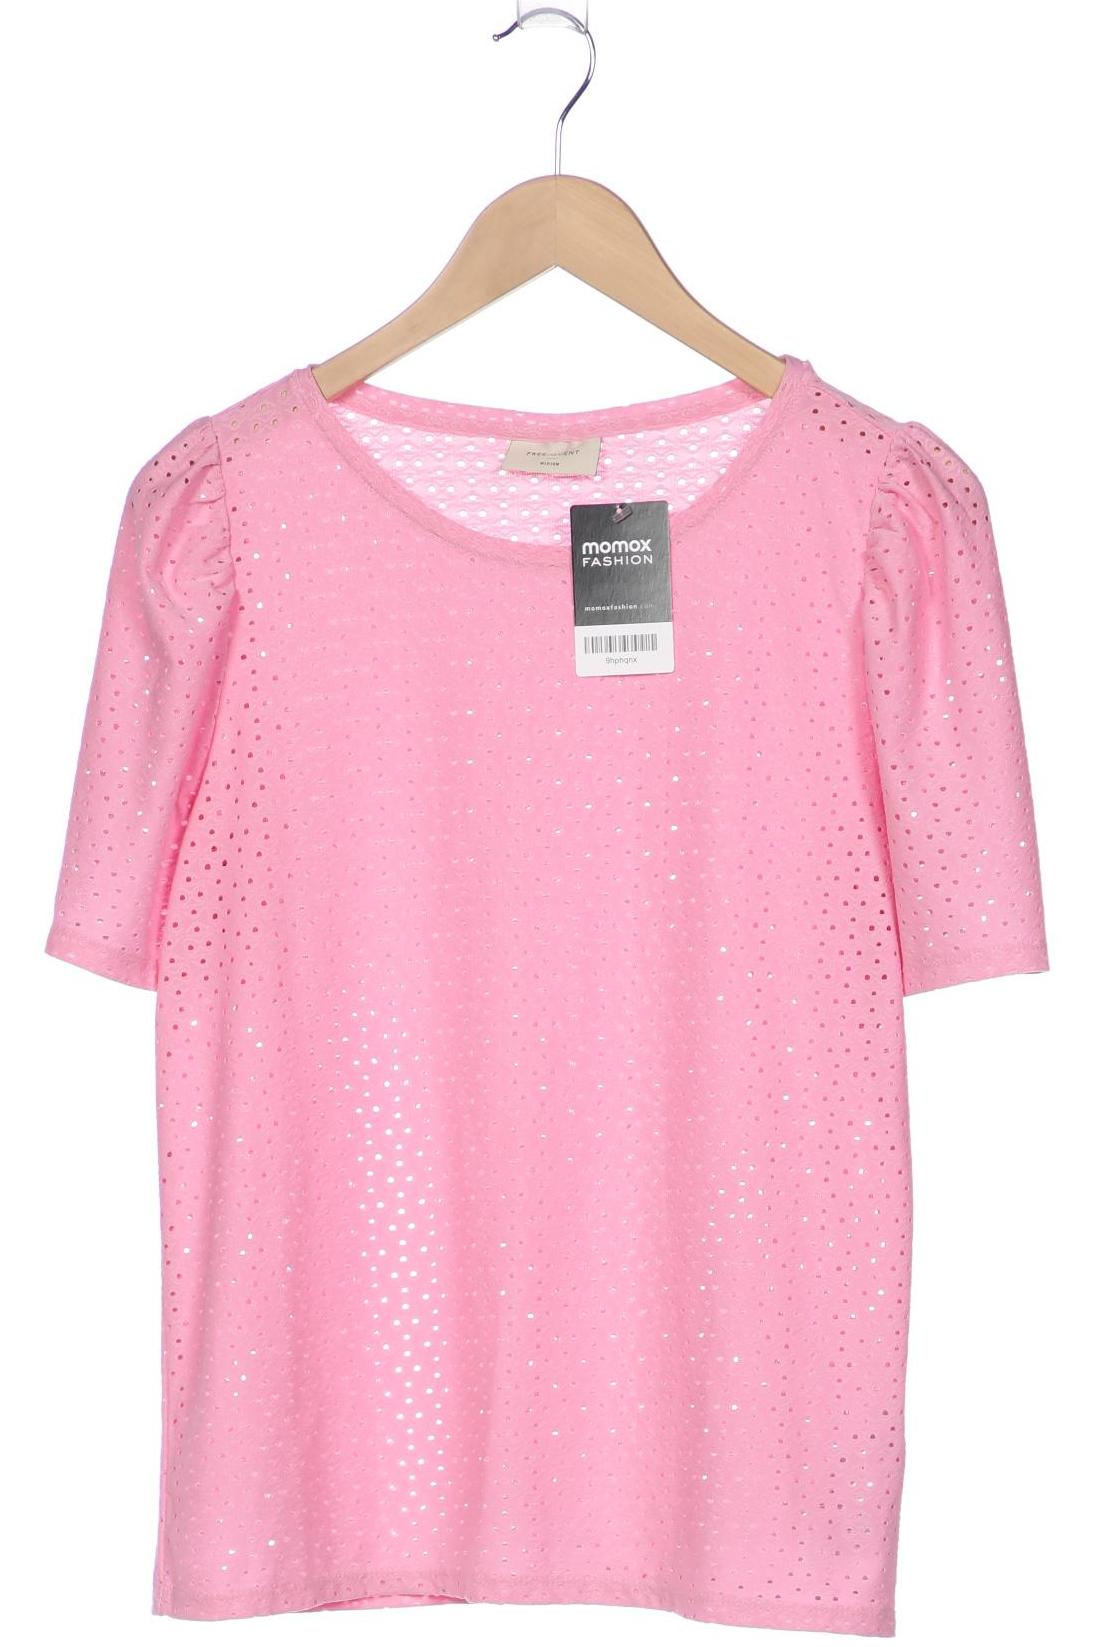 FREEQUENT Damen T-Shirt, pink von FREEQUENT